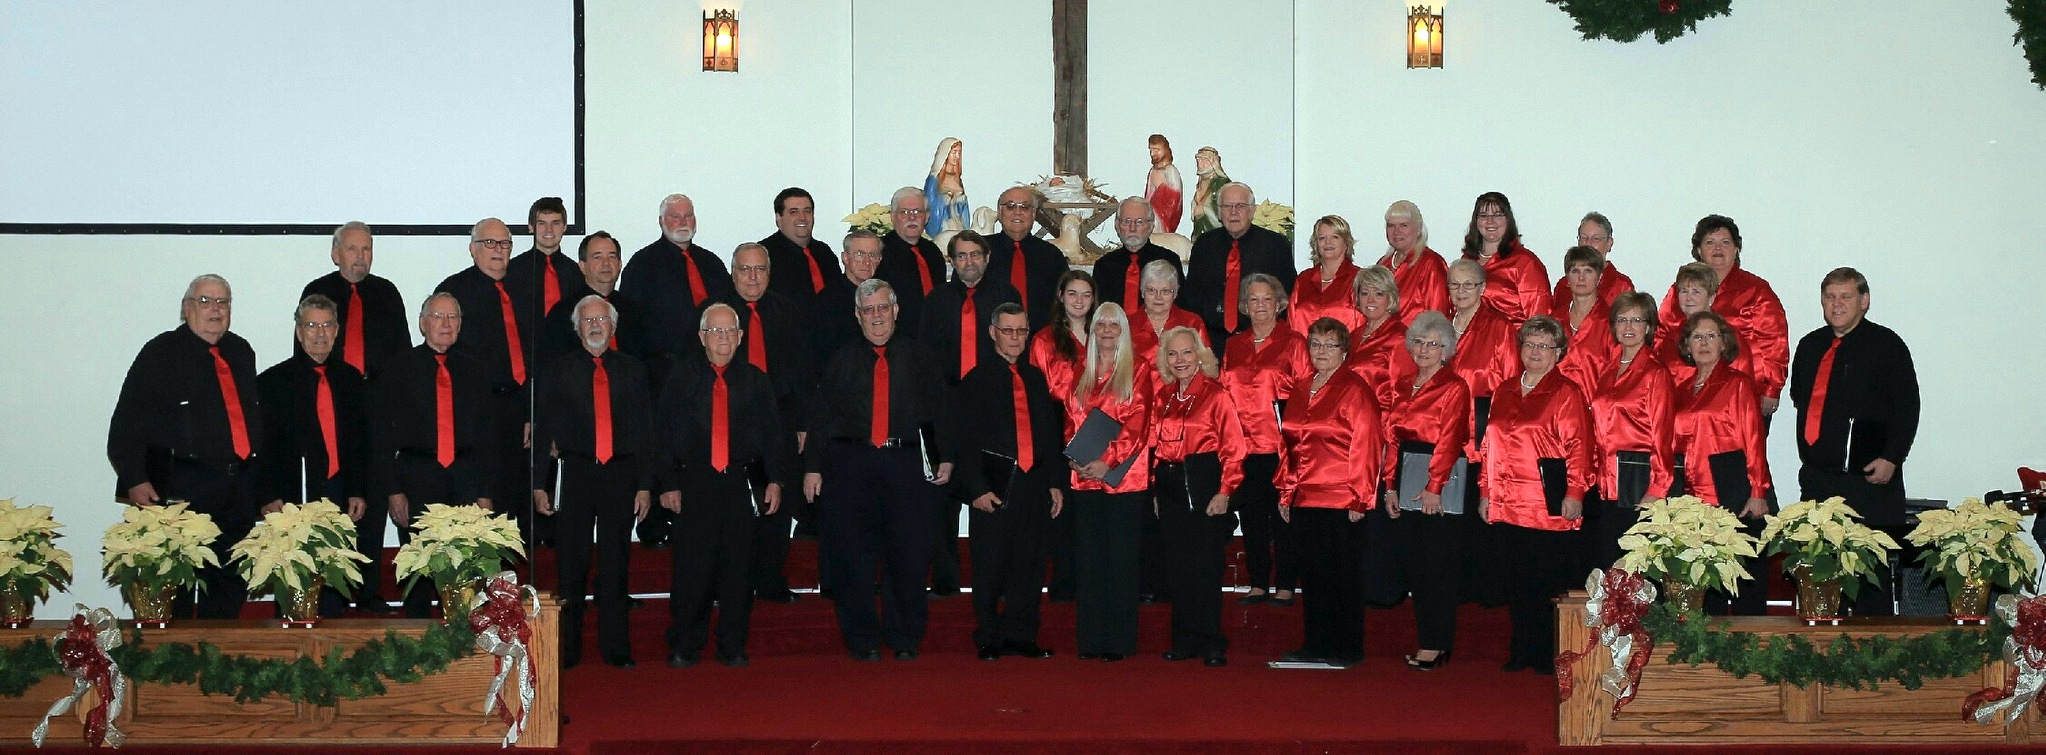 D.M. Davis Men's and Women's Choirs